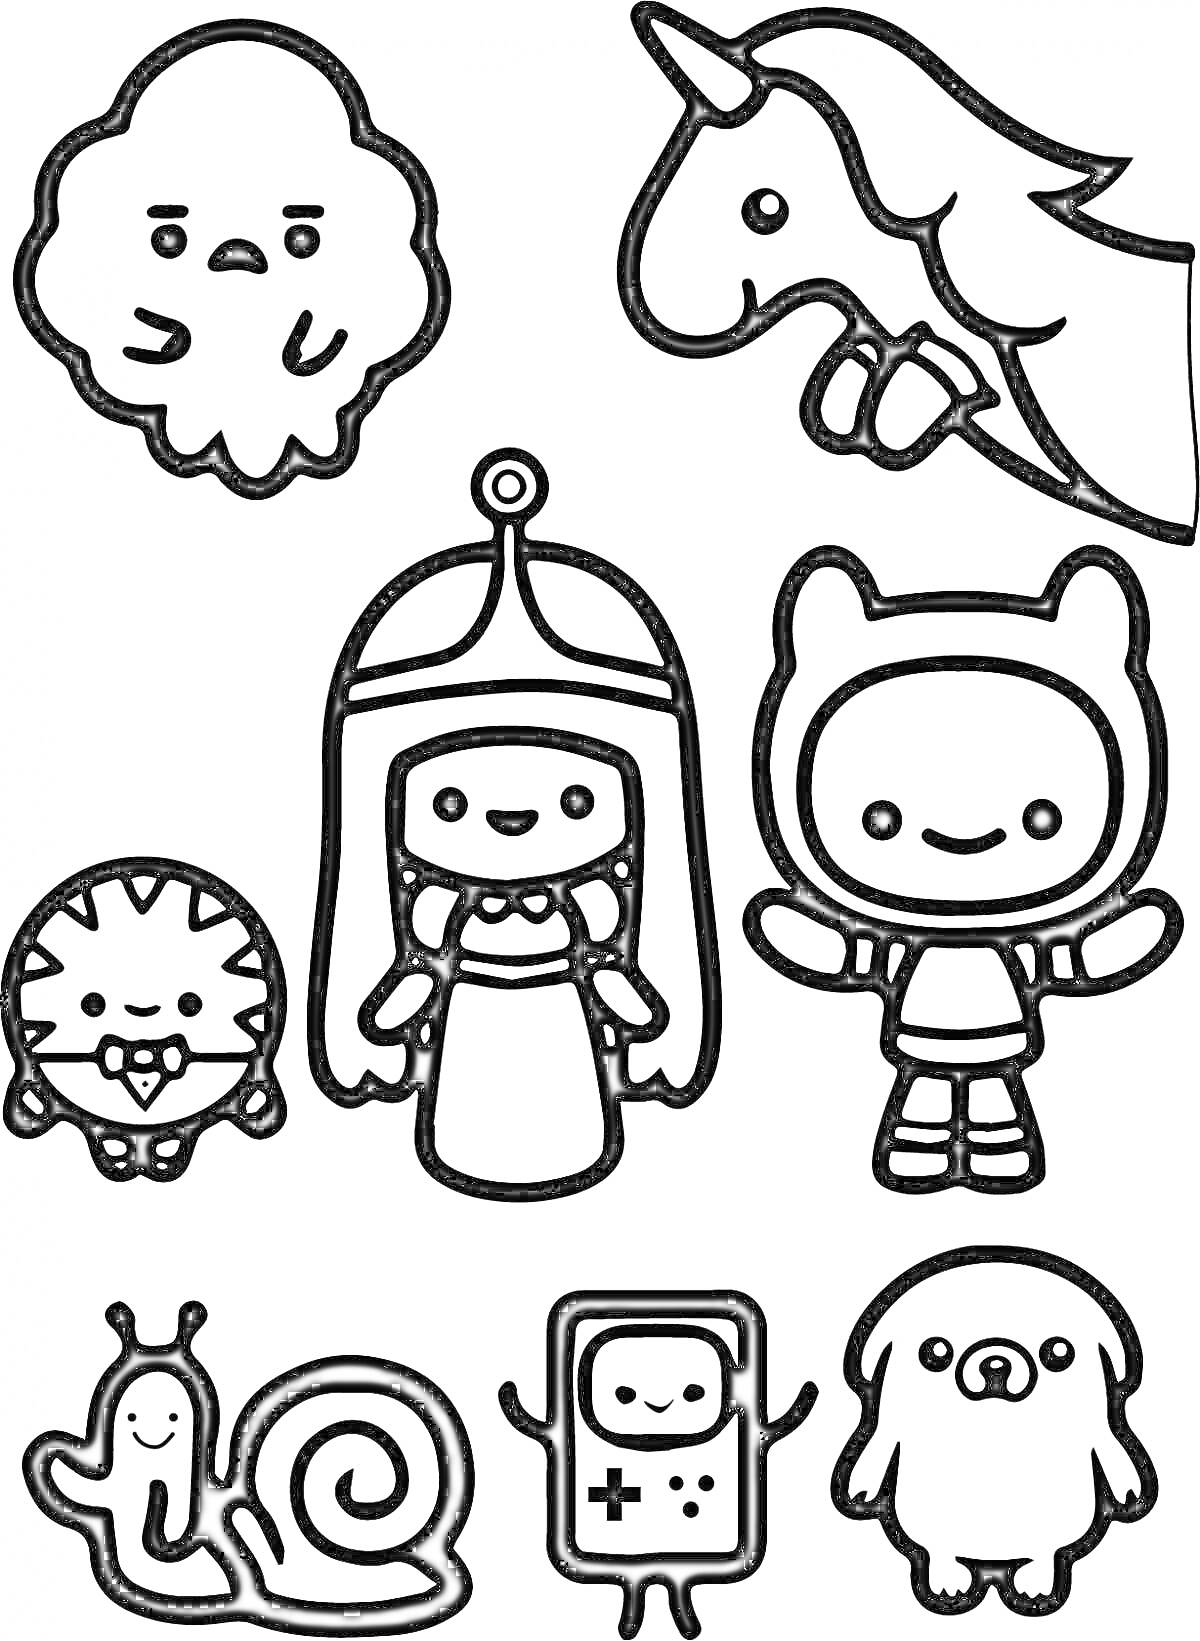 Раскраска Облако, единорог, человек-тигр, принцесса, ребенок в костюме, улитка, игровая консоль, собака